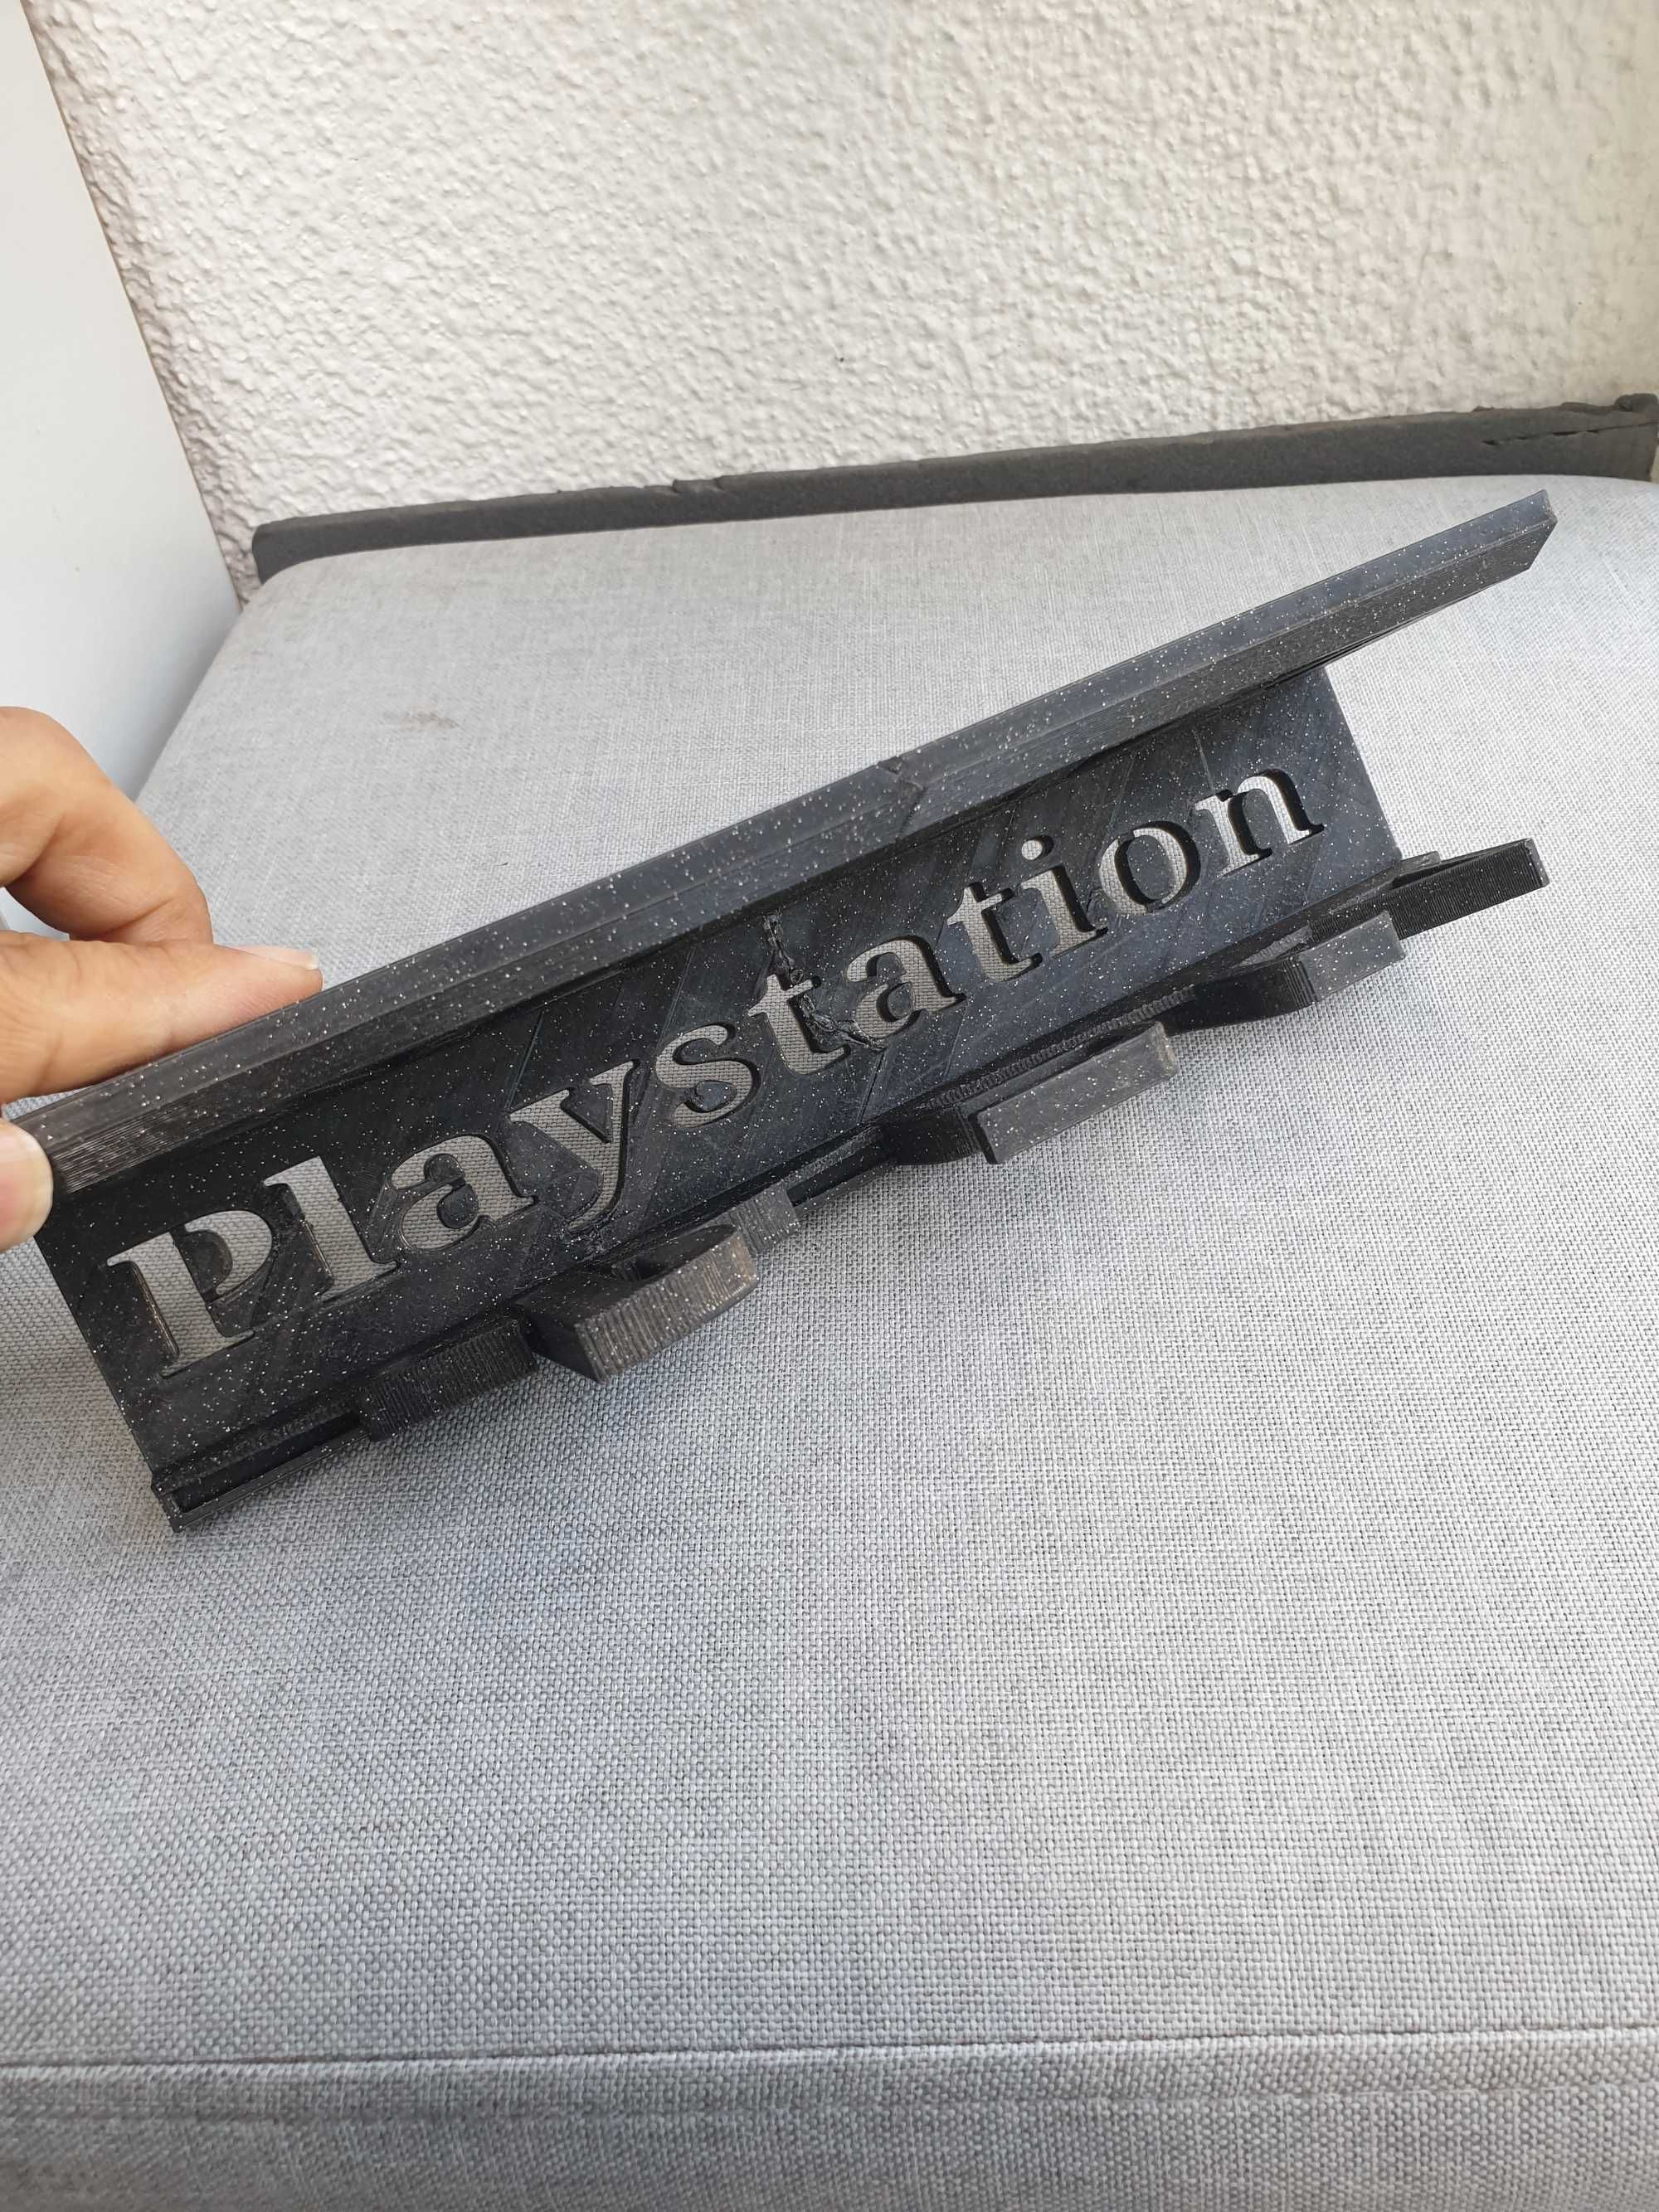 Playstation suporte de parede ou armário